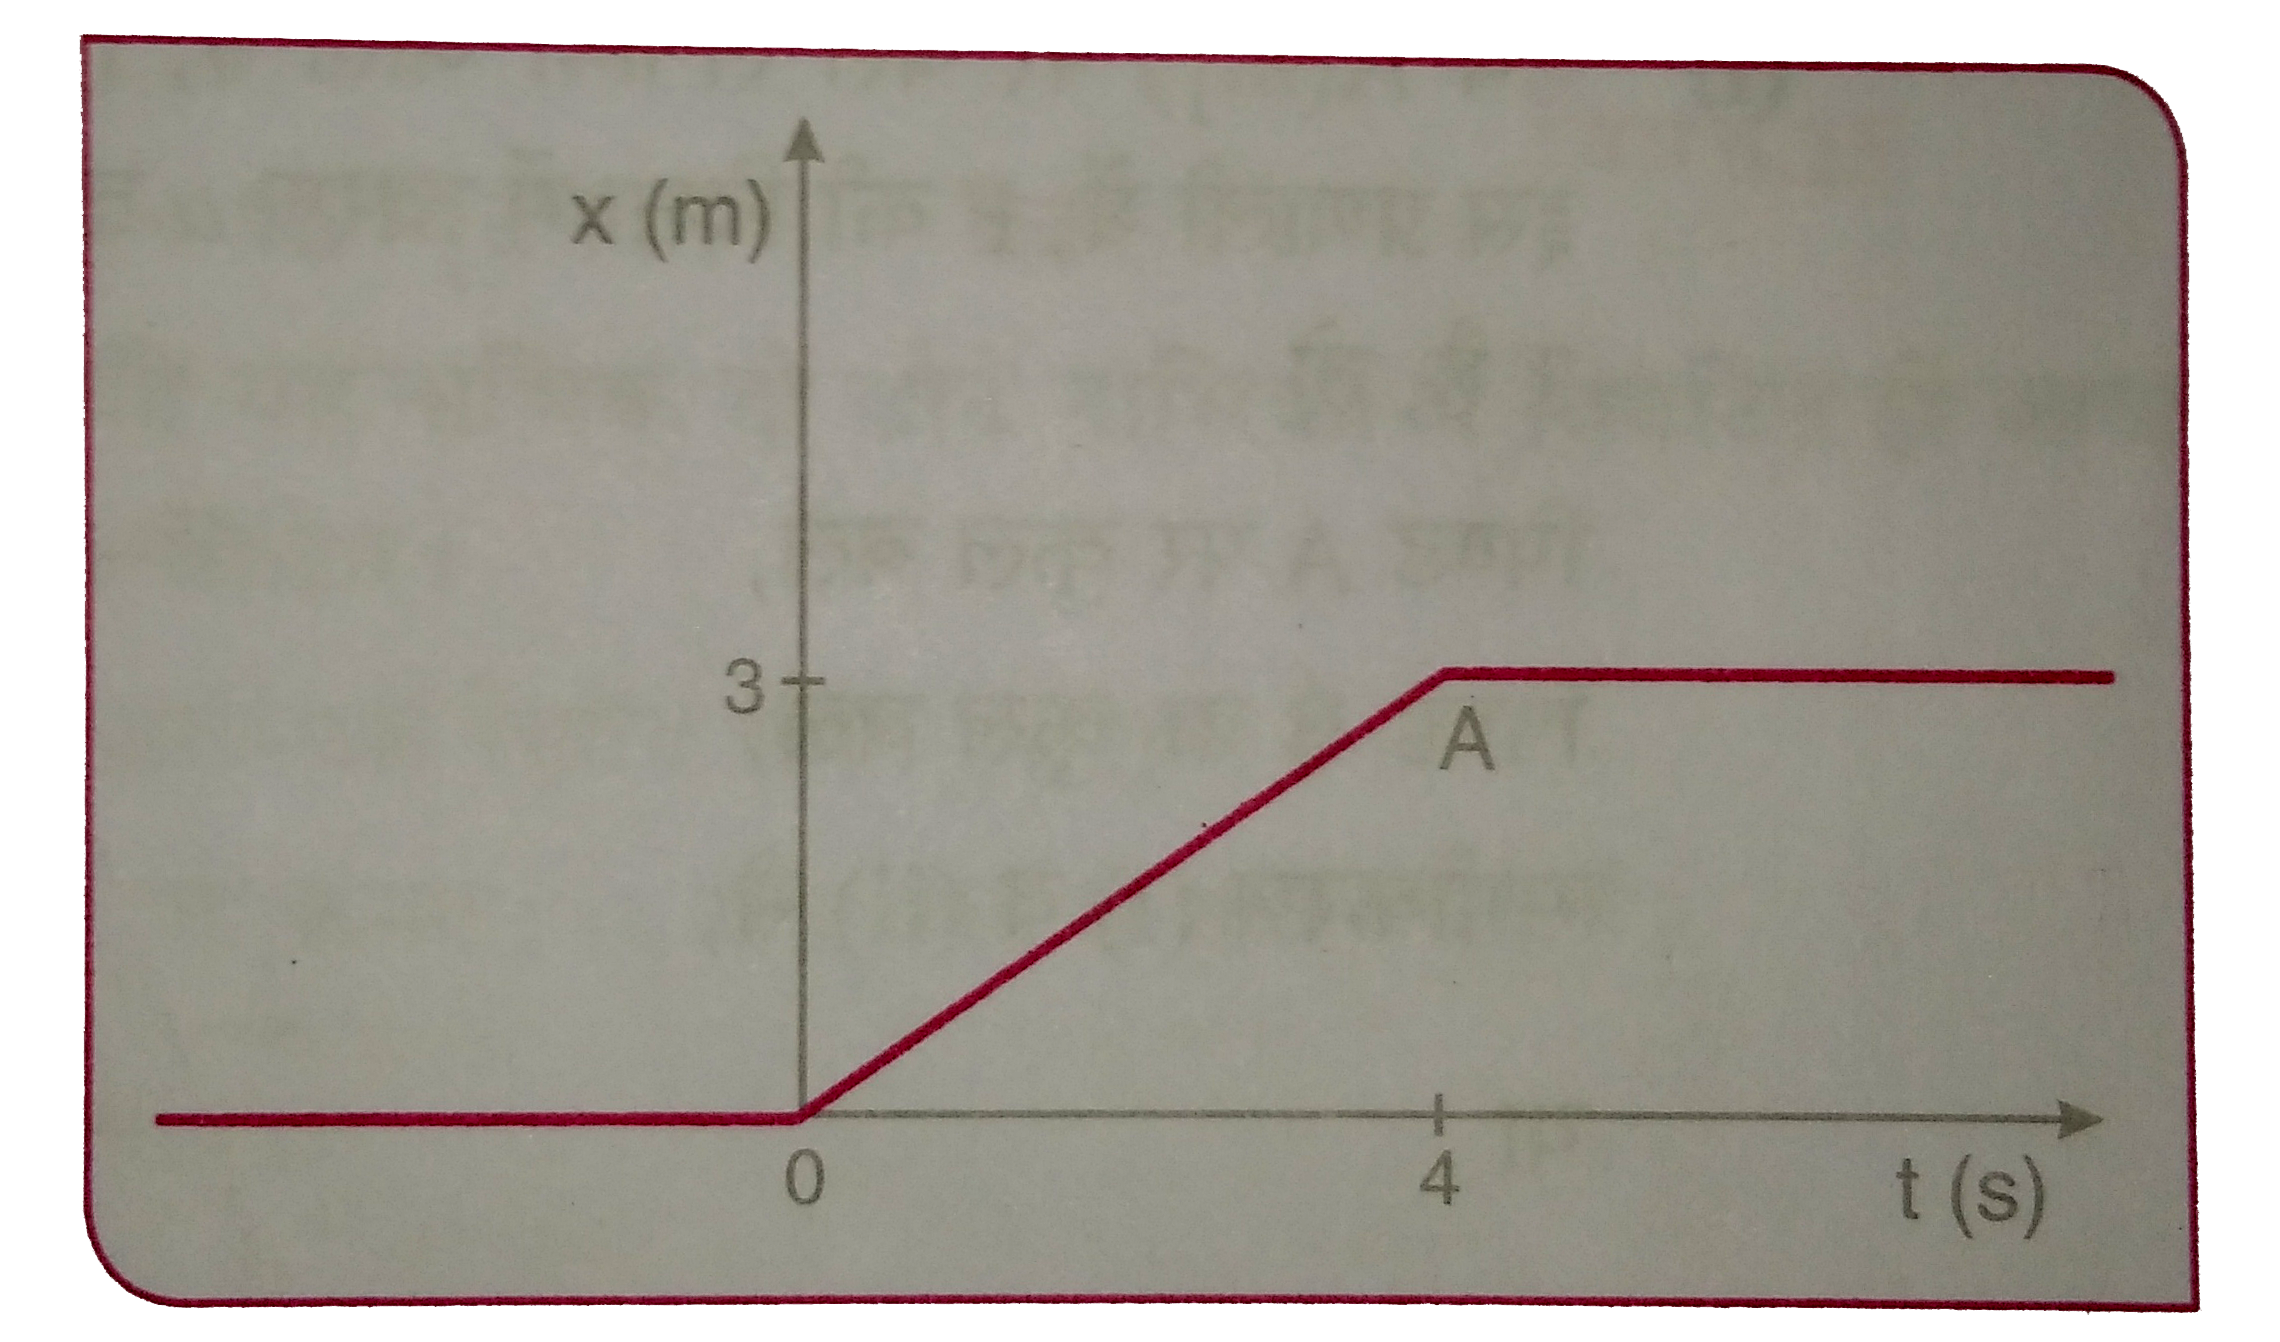 चित्र 6.21 में 4 किग्रा संहति के किसी पिण्ड का स्थिति - समय ग्राफ दर्शाया गया है ।   tlt0,tgt4 सेकण्ड, 0lttlt4 सेकण्ड के लिए पिण्ड पर आरोपित बल क्या है ?